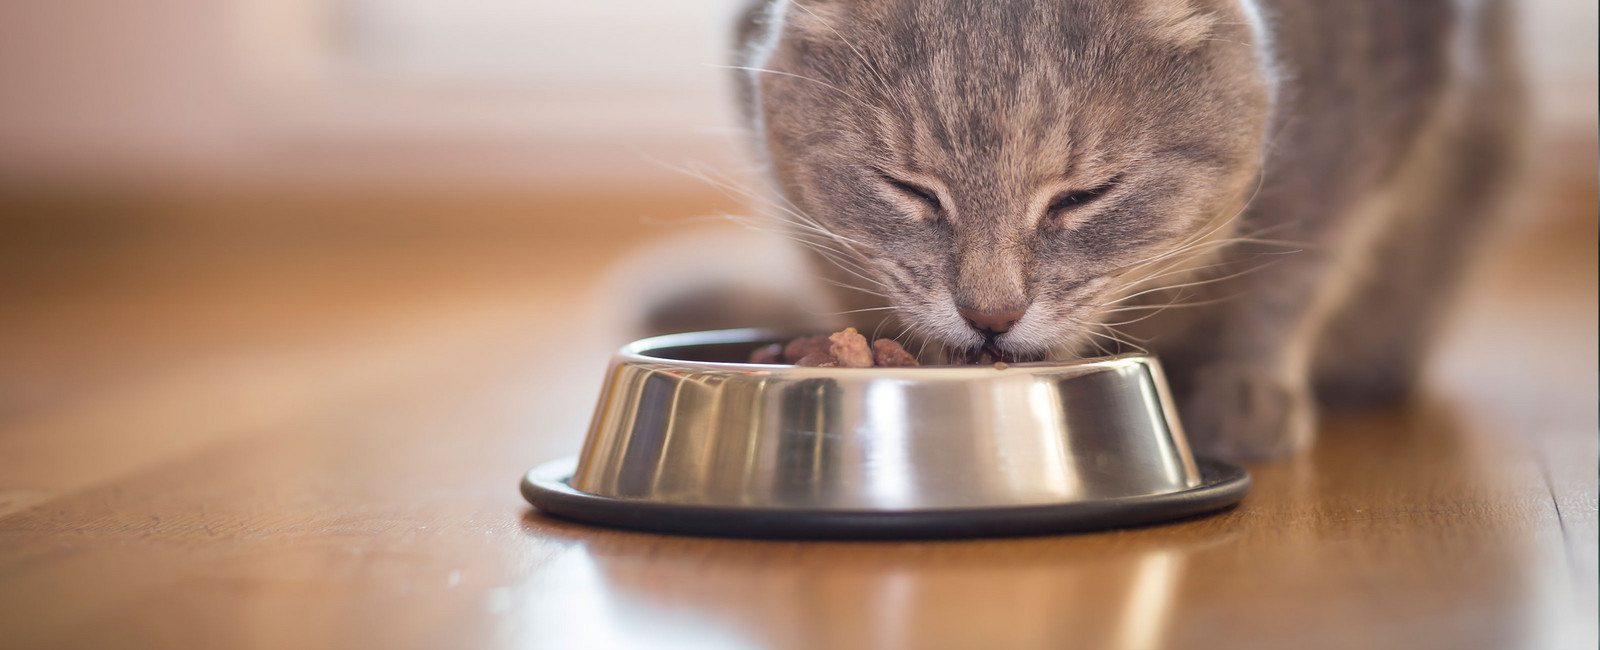 Was dürfen Katzen essen?